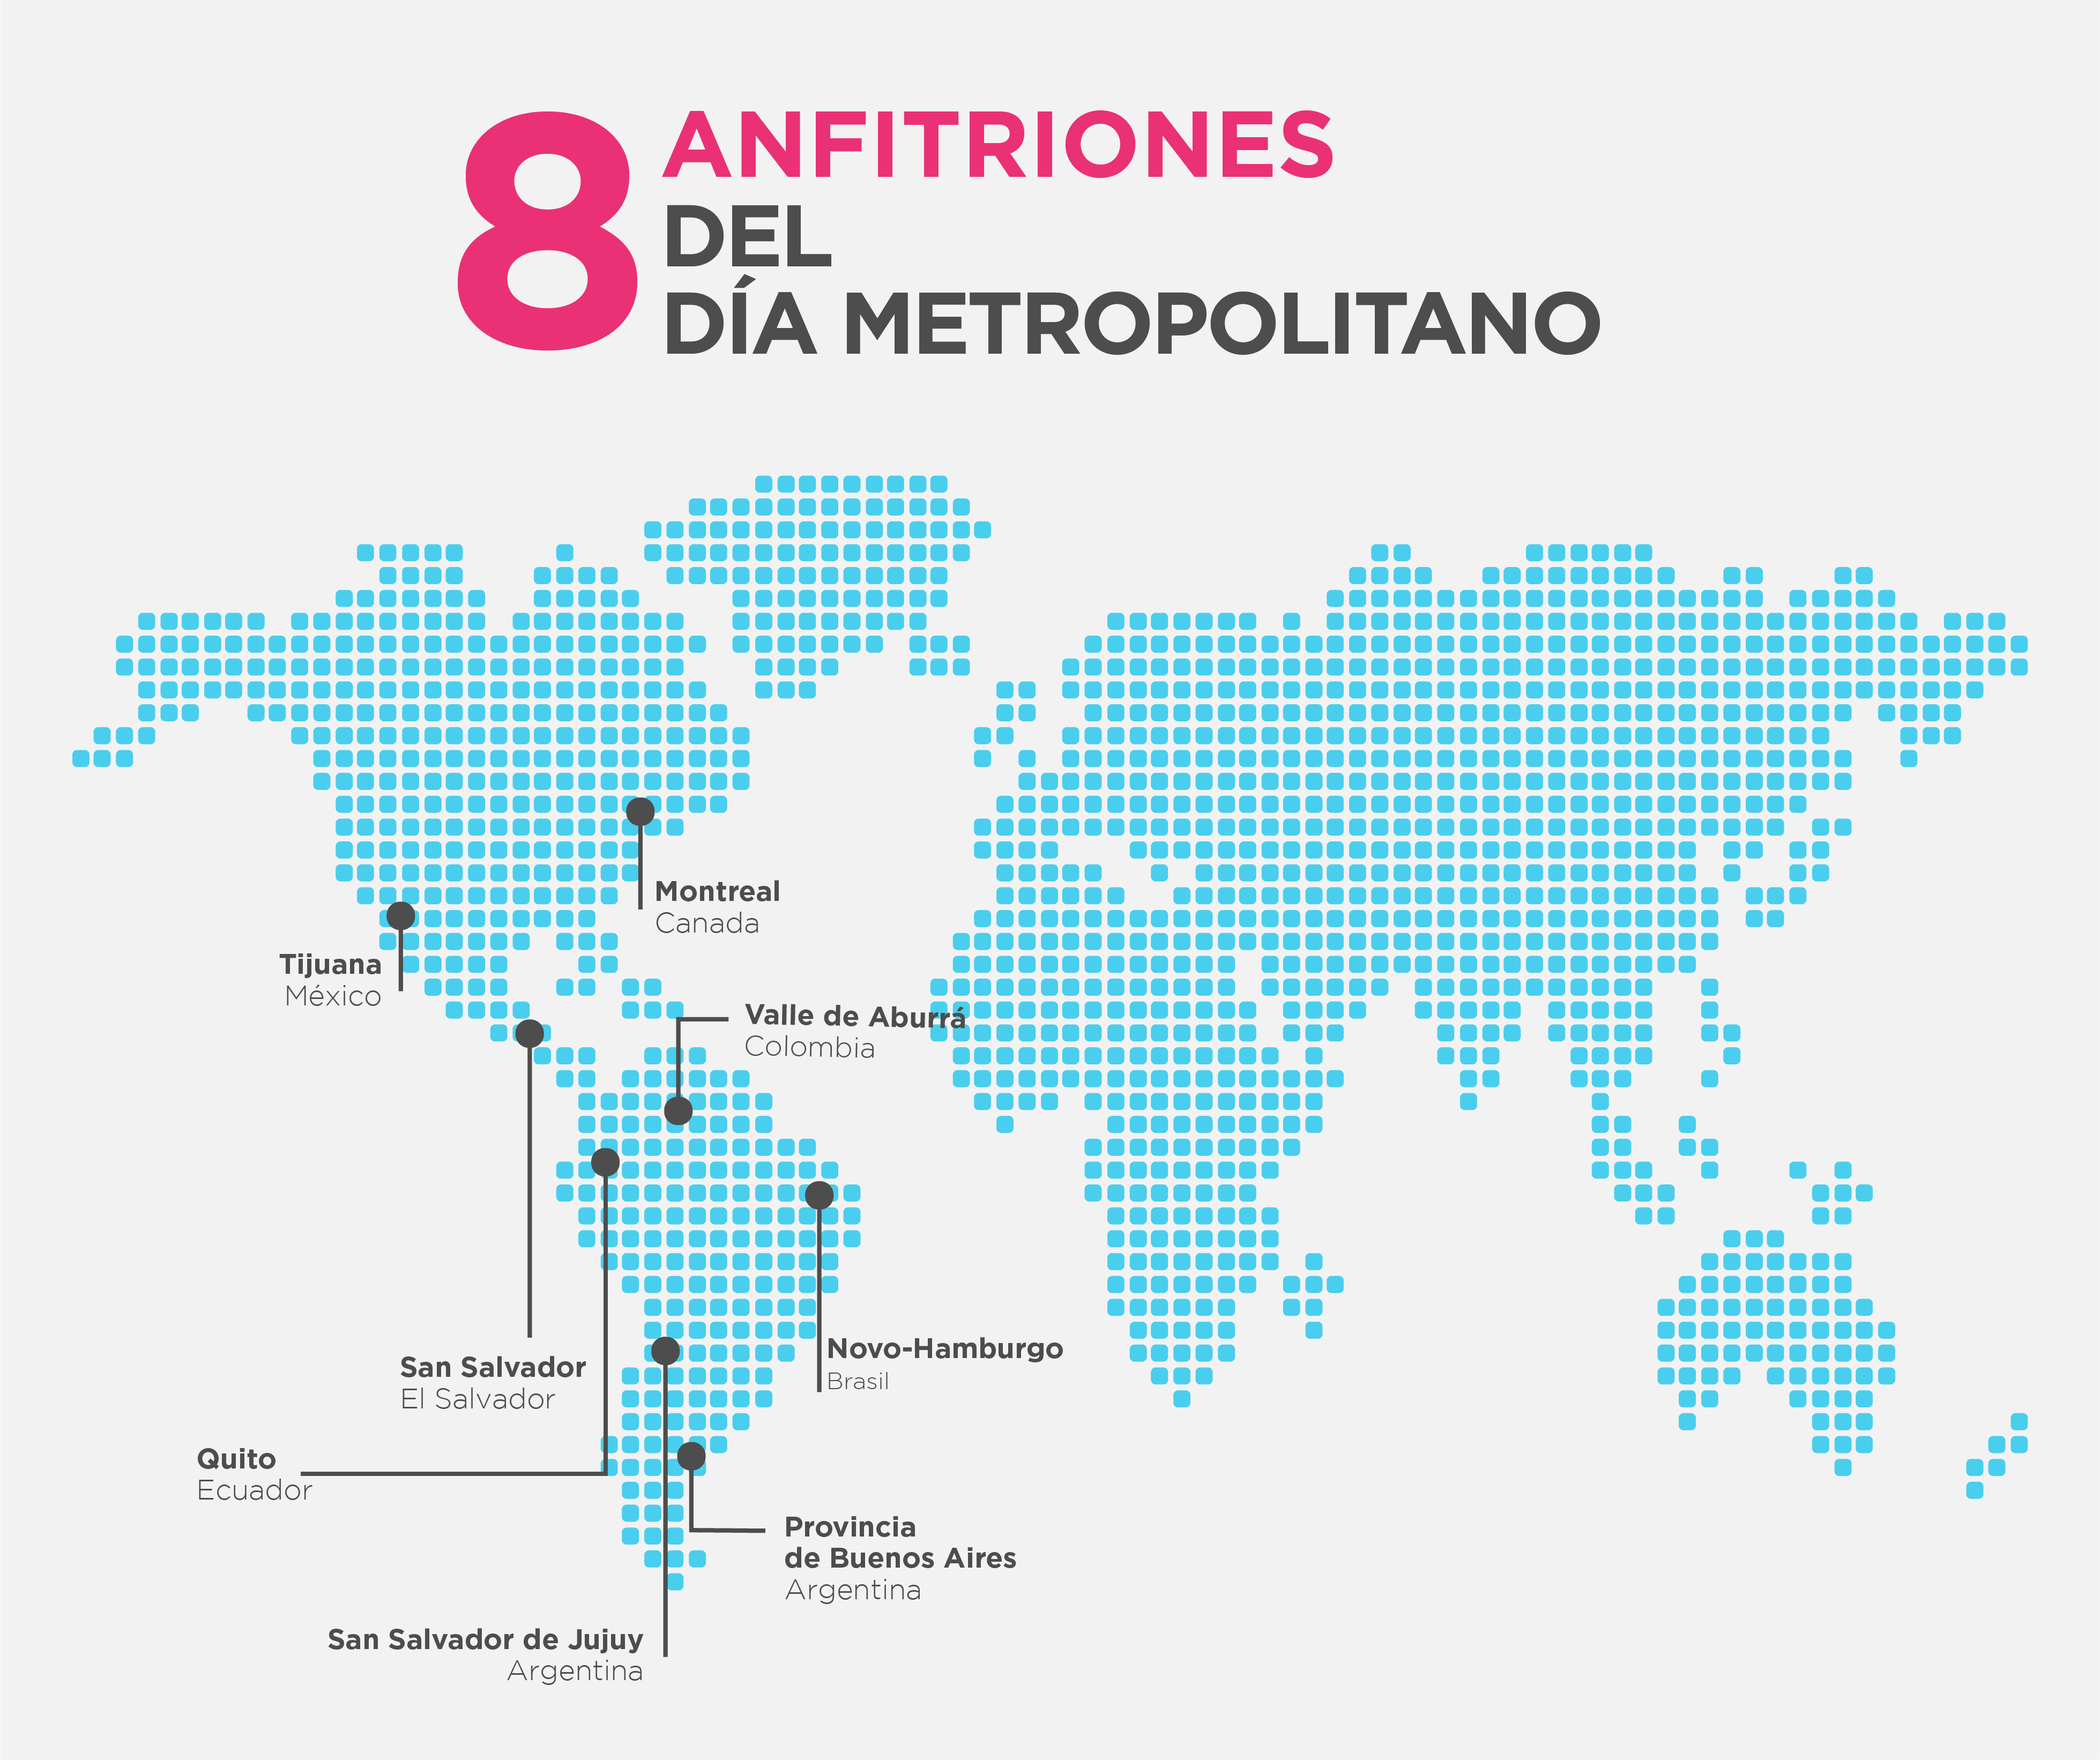 Los 8 países anfitriones del Día Metropolitano 2018